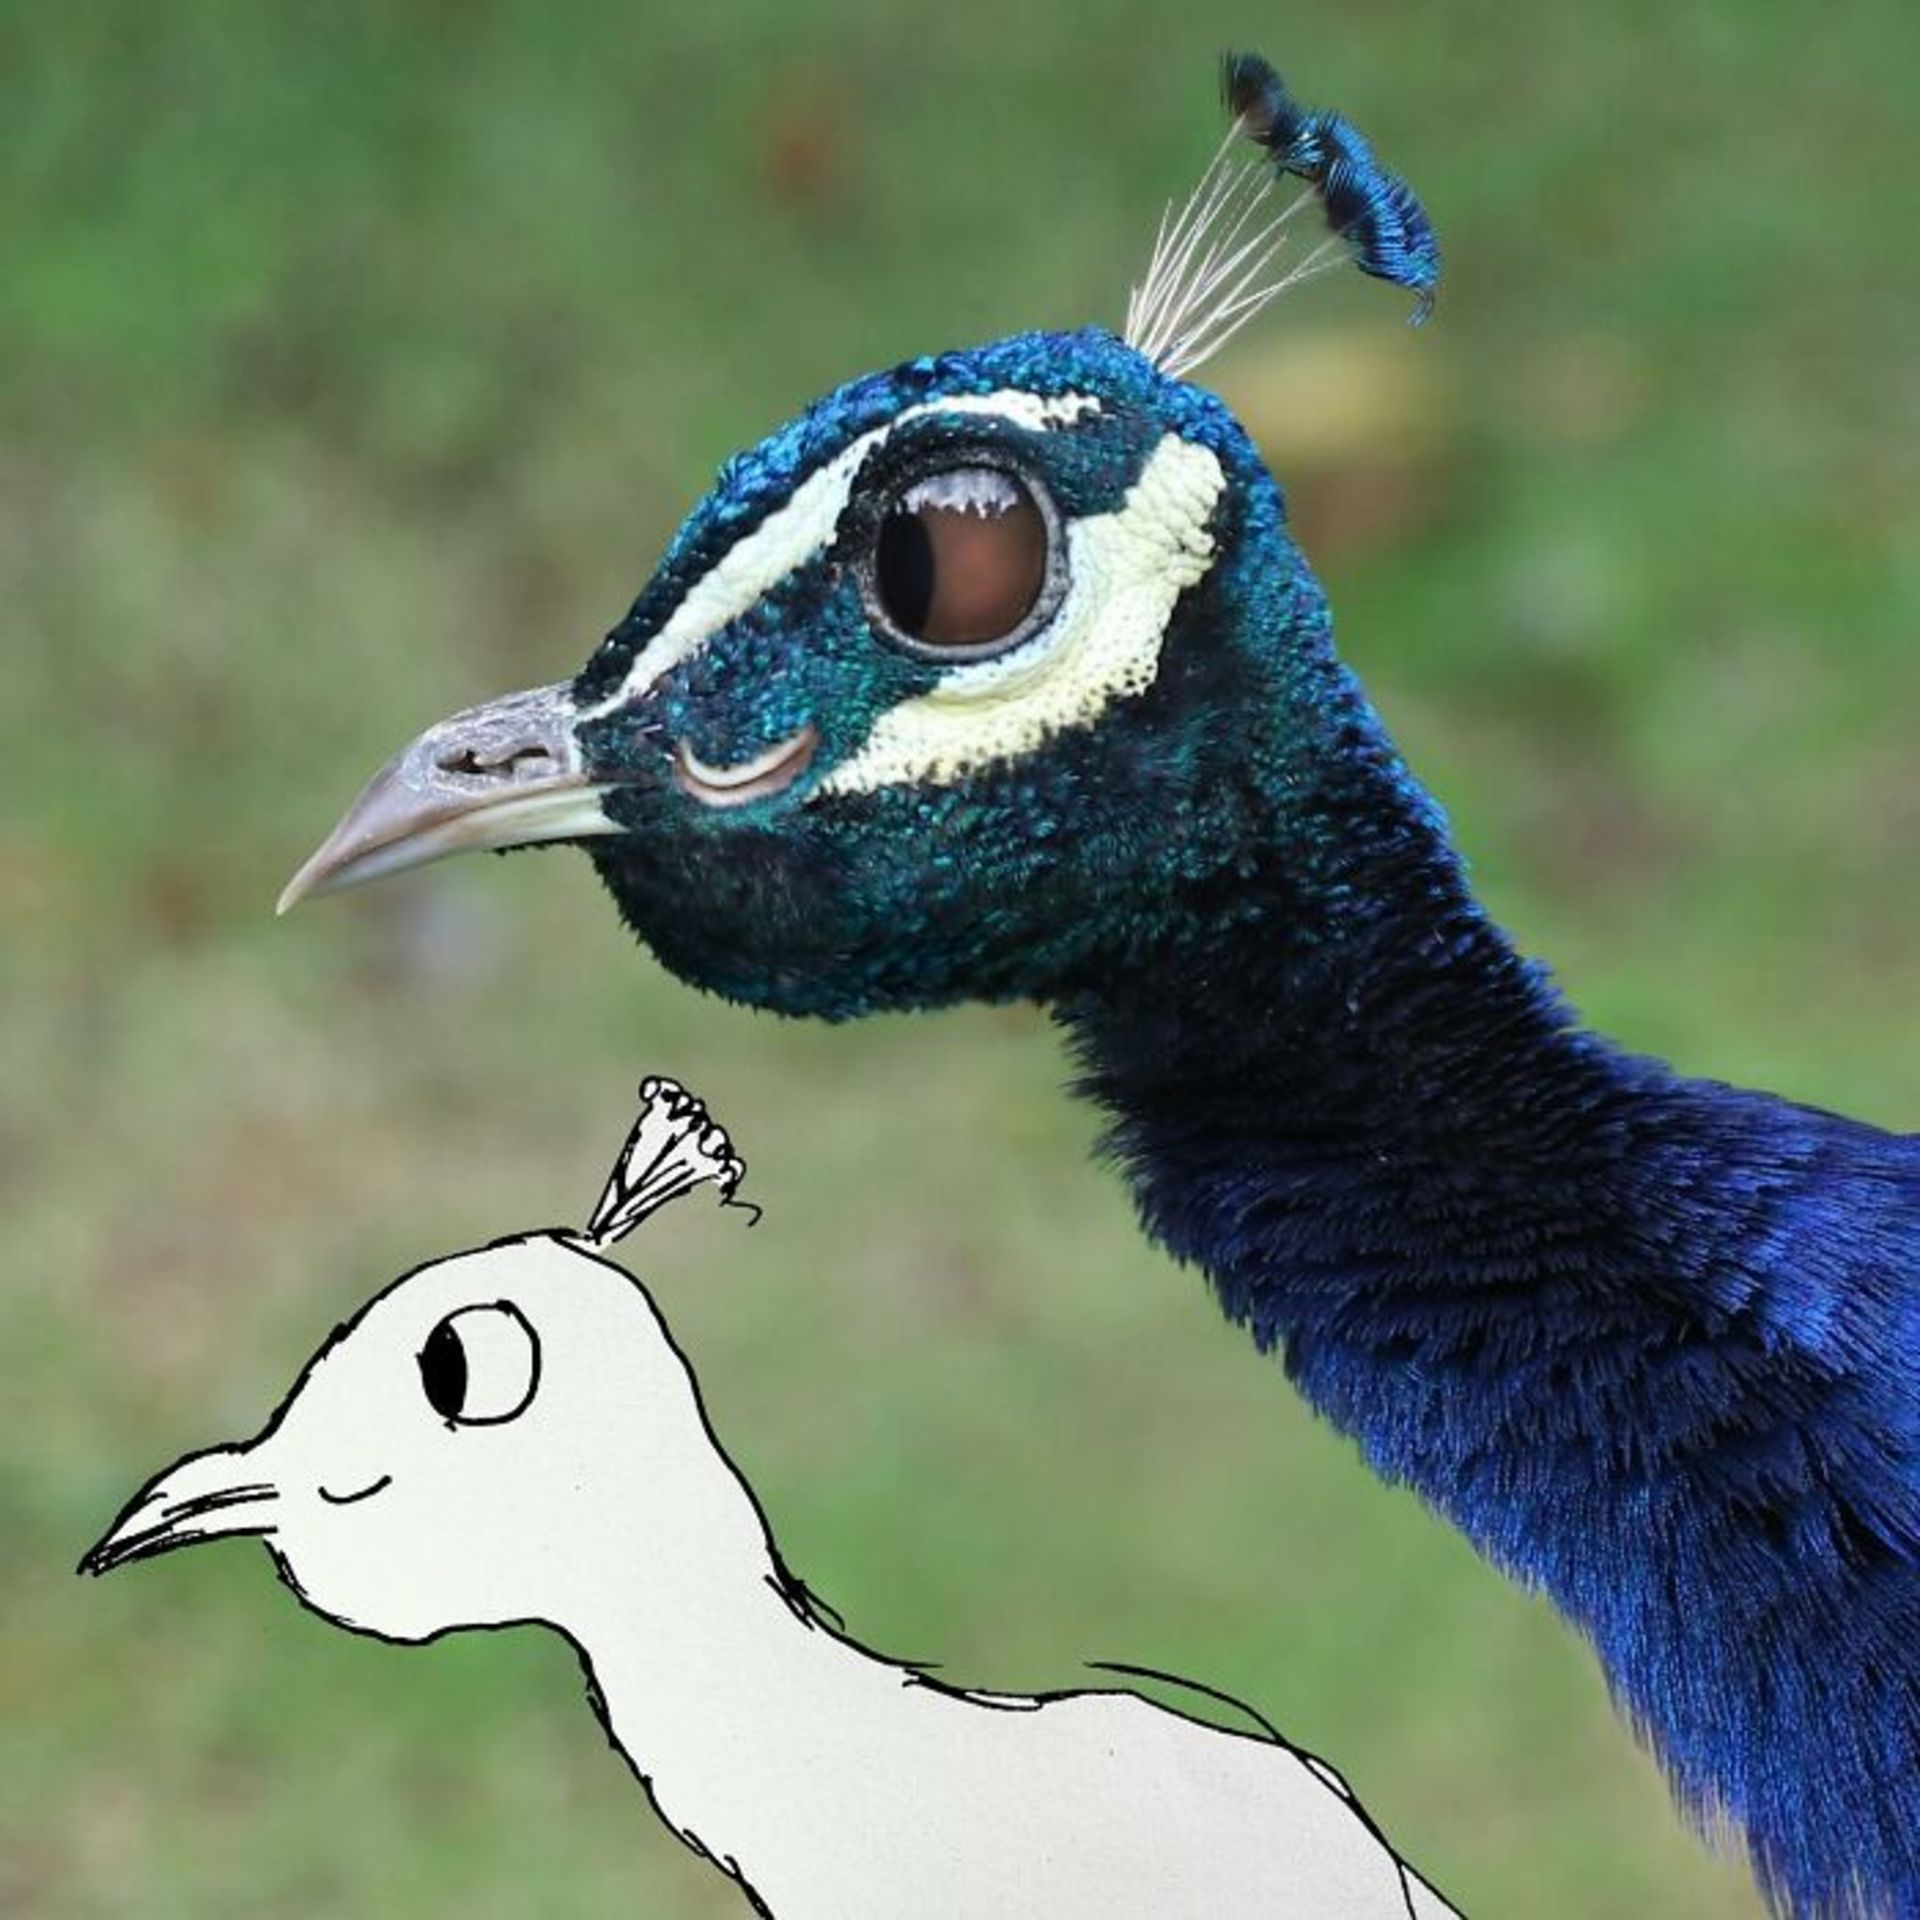 زنده کردن نقاشی کودکان با فتوشاپ - طاووس